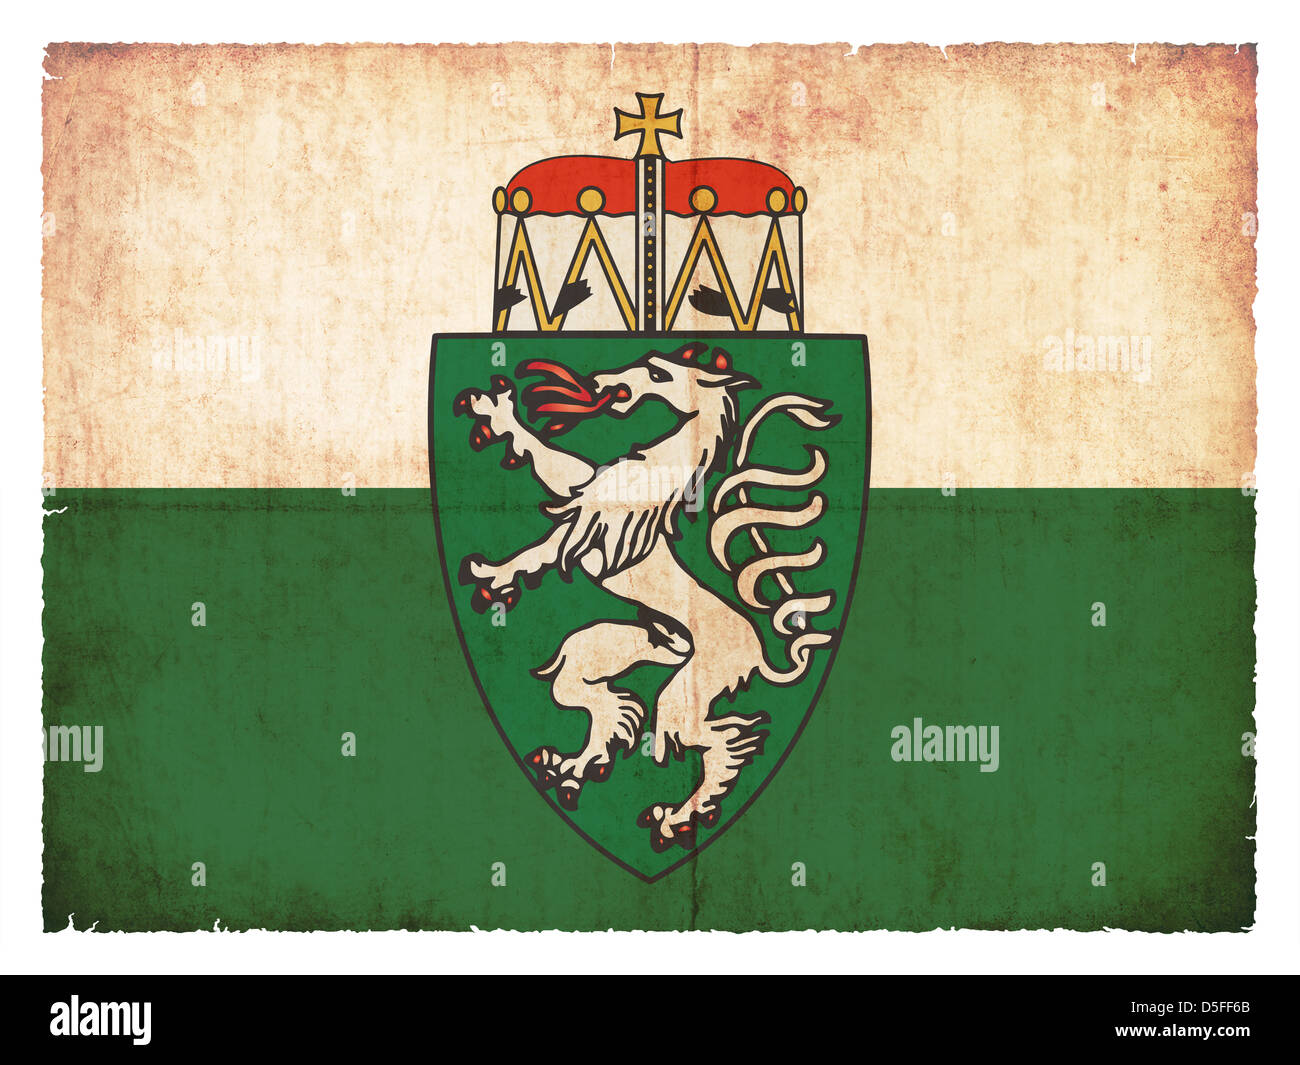 Bandiera della provincia austriaca Stiria creato in stile grunge Foto Stock